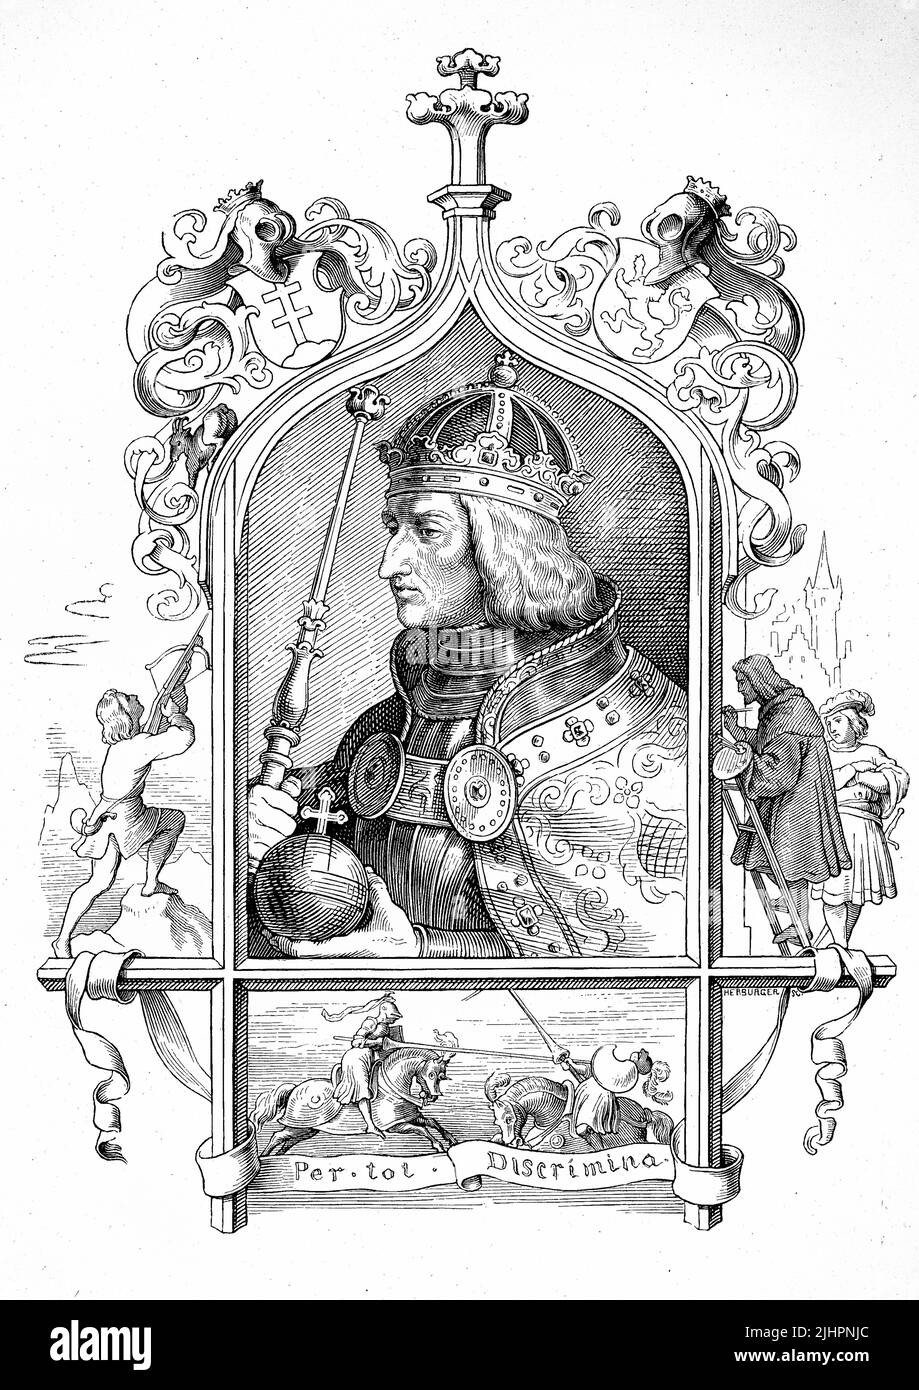 Maximilian II (Geboren 31. Juli 1527, gestorben 12. Oktober 1576), zeitgemäß auch Maximilian der andere, war Kaiser des Heiligen Römischen Reiches und Erzherzog von Österreich von 1564 bis 1576 / Maximilian II. (Geboren 31. Juli 1527, gestorben 12. Oktober 1576), gleichzeitig auch Maximilian der andere, war von 1564 bis 1576 Kaiser des Heiligen Römischen Reiches und Erzherzog von Österreich, Historisch, Digital restaurierte Reproduction einer Originalvorlage aus dem 19. Jahrhundert, das Originaldatum nicht bekannt, Stockfoto